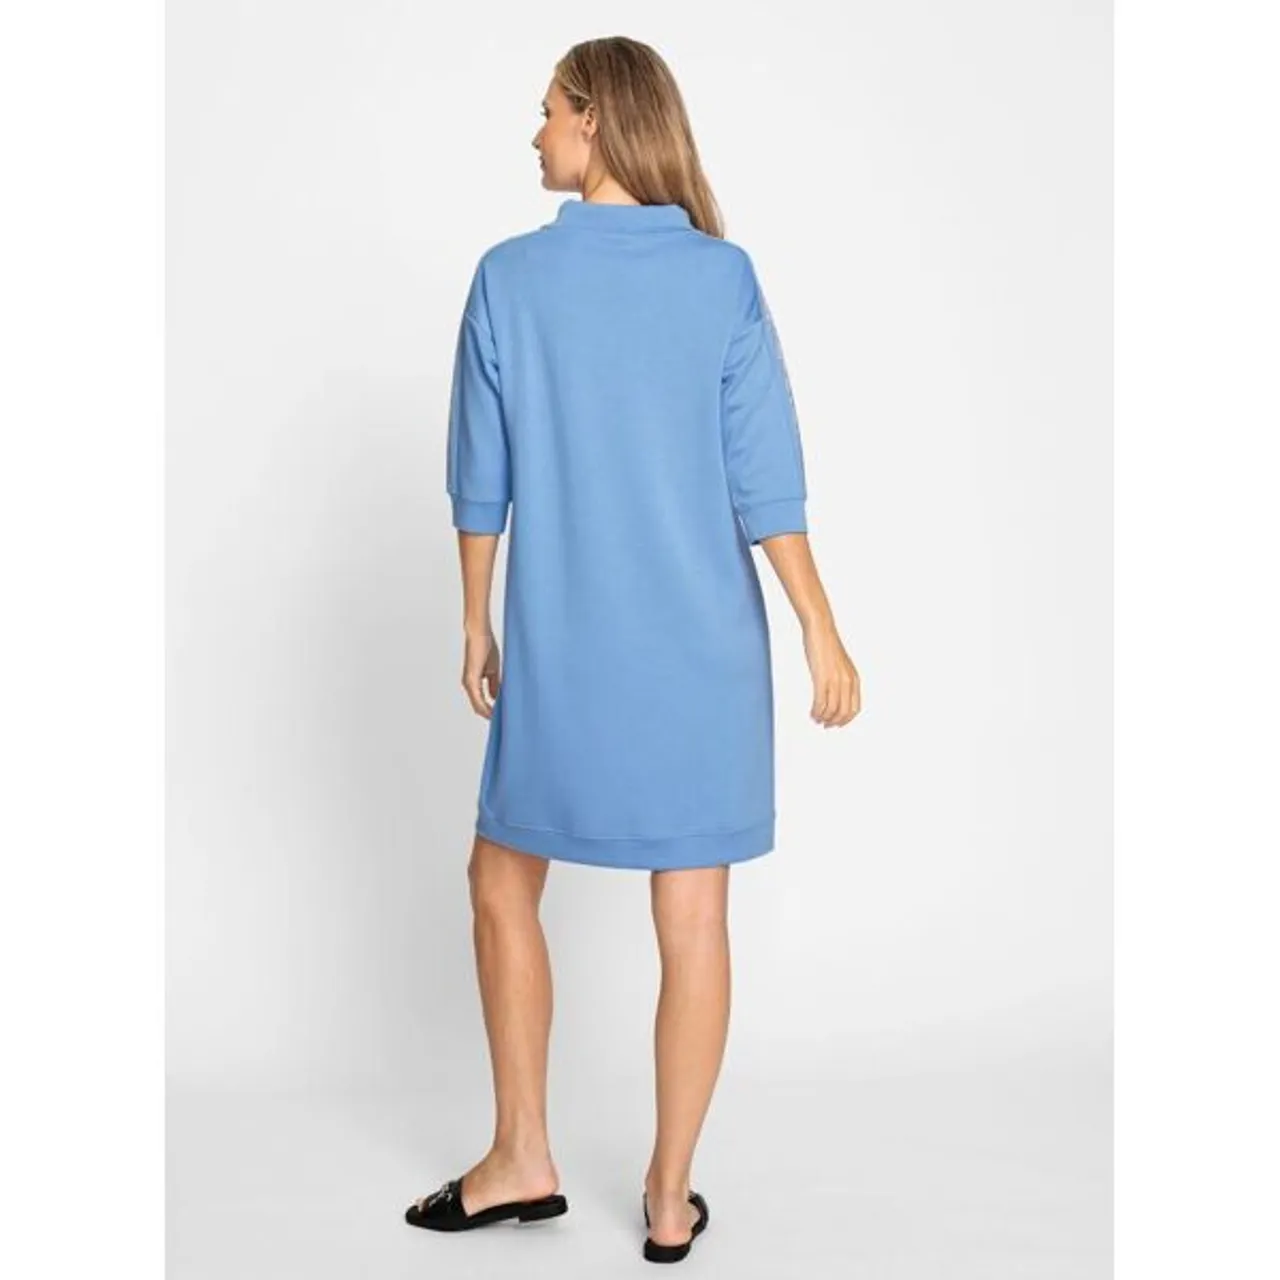 Sweatkleid HEINE "Jersey-Kleid" Gr. 38, Normalgrößen, blau (himmelblau) Damen Kleider Sweatkleider